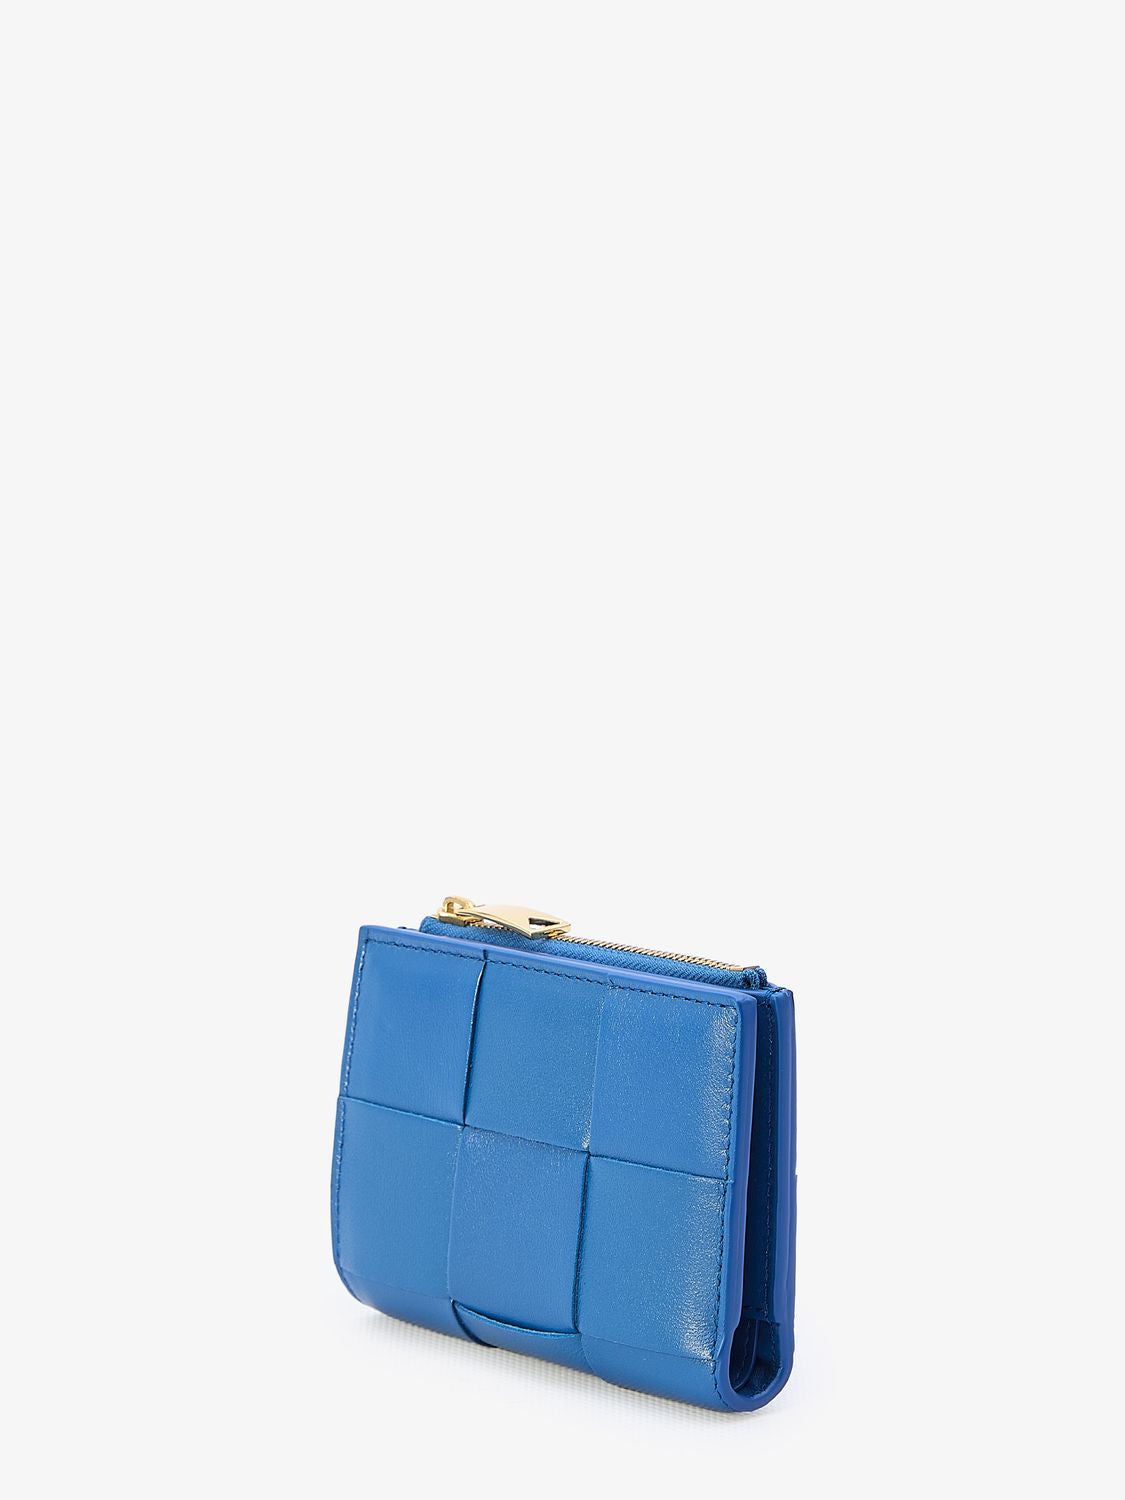 ブルー レザー財布 【女性向け】イントレッチオ モチーフ付き-小型でおしゃれ